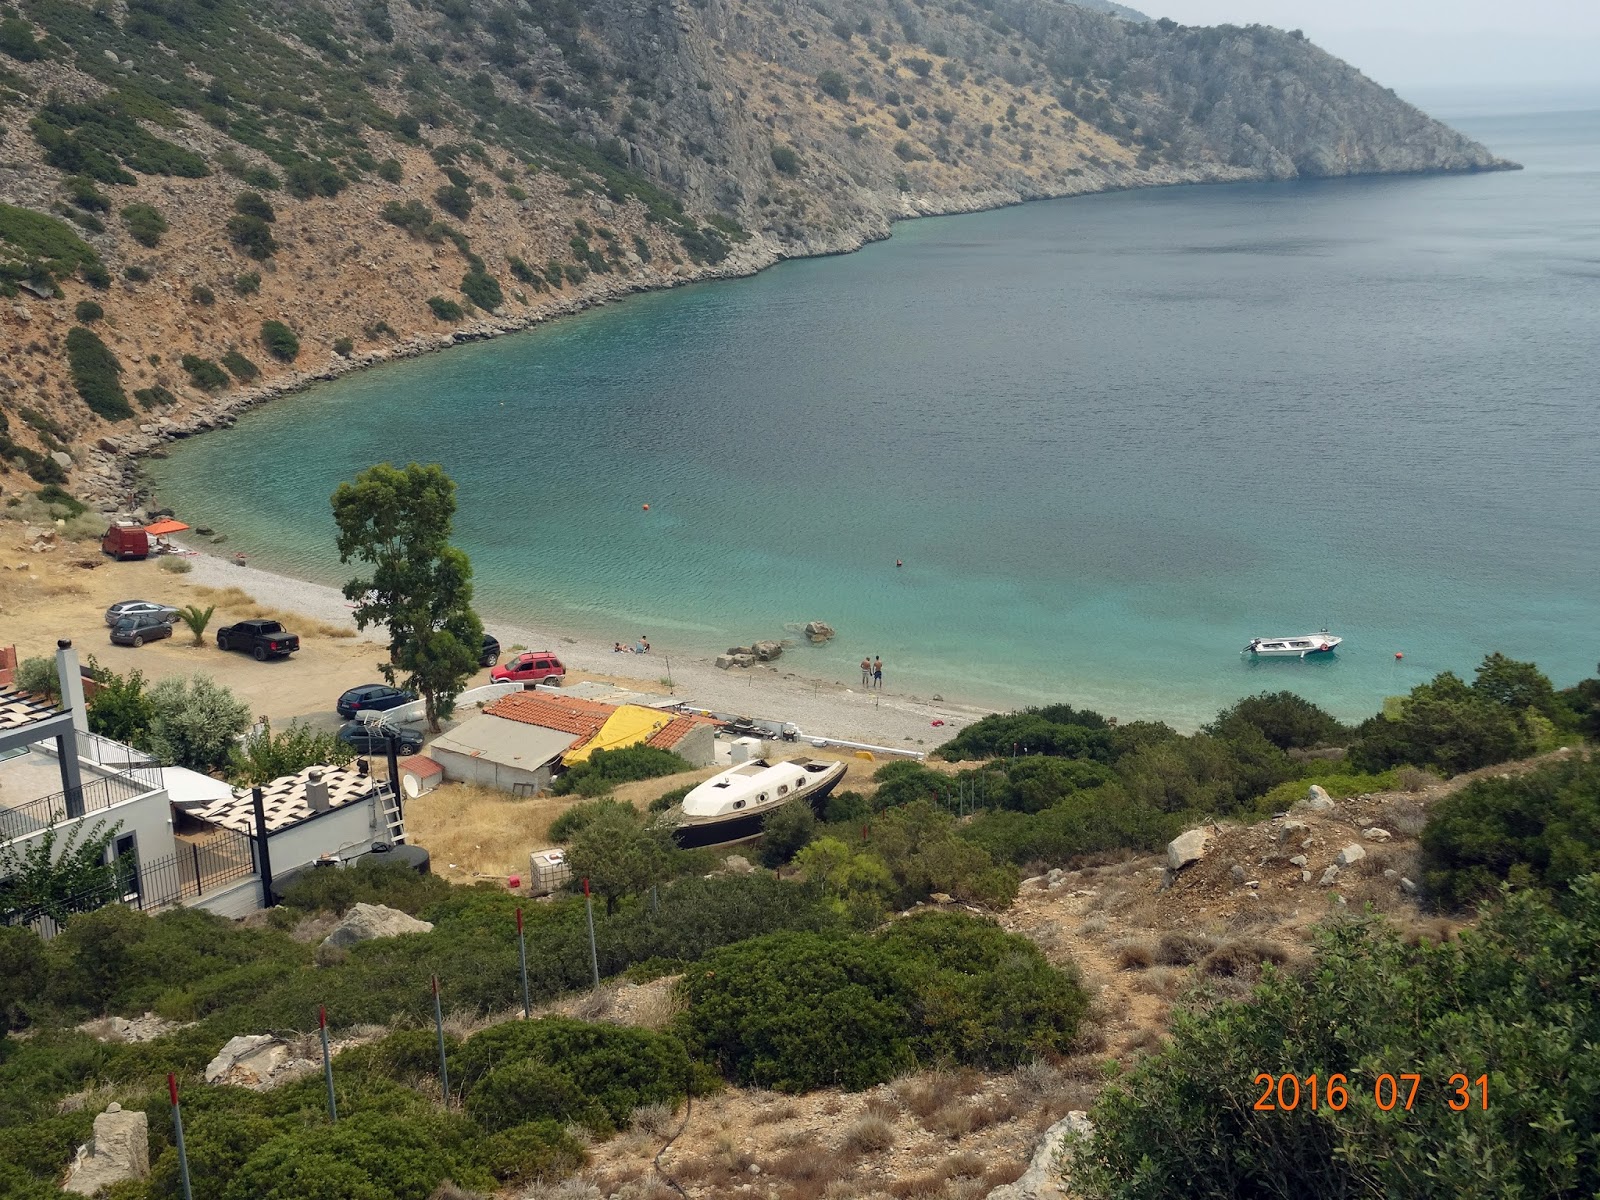 Zdjęcie Lemos beach położony w naturalnym obszarze